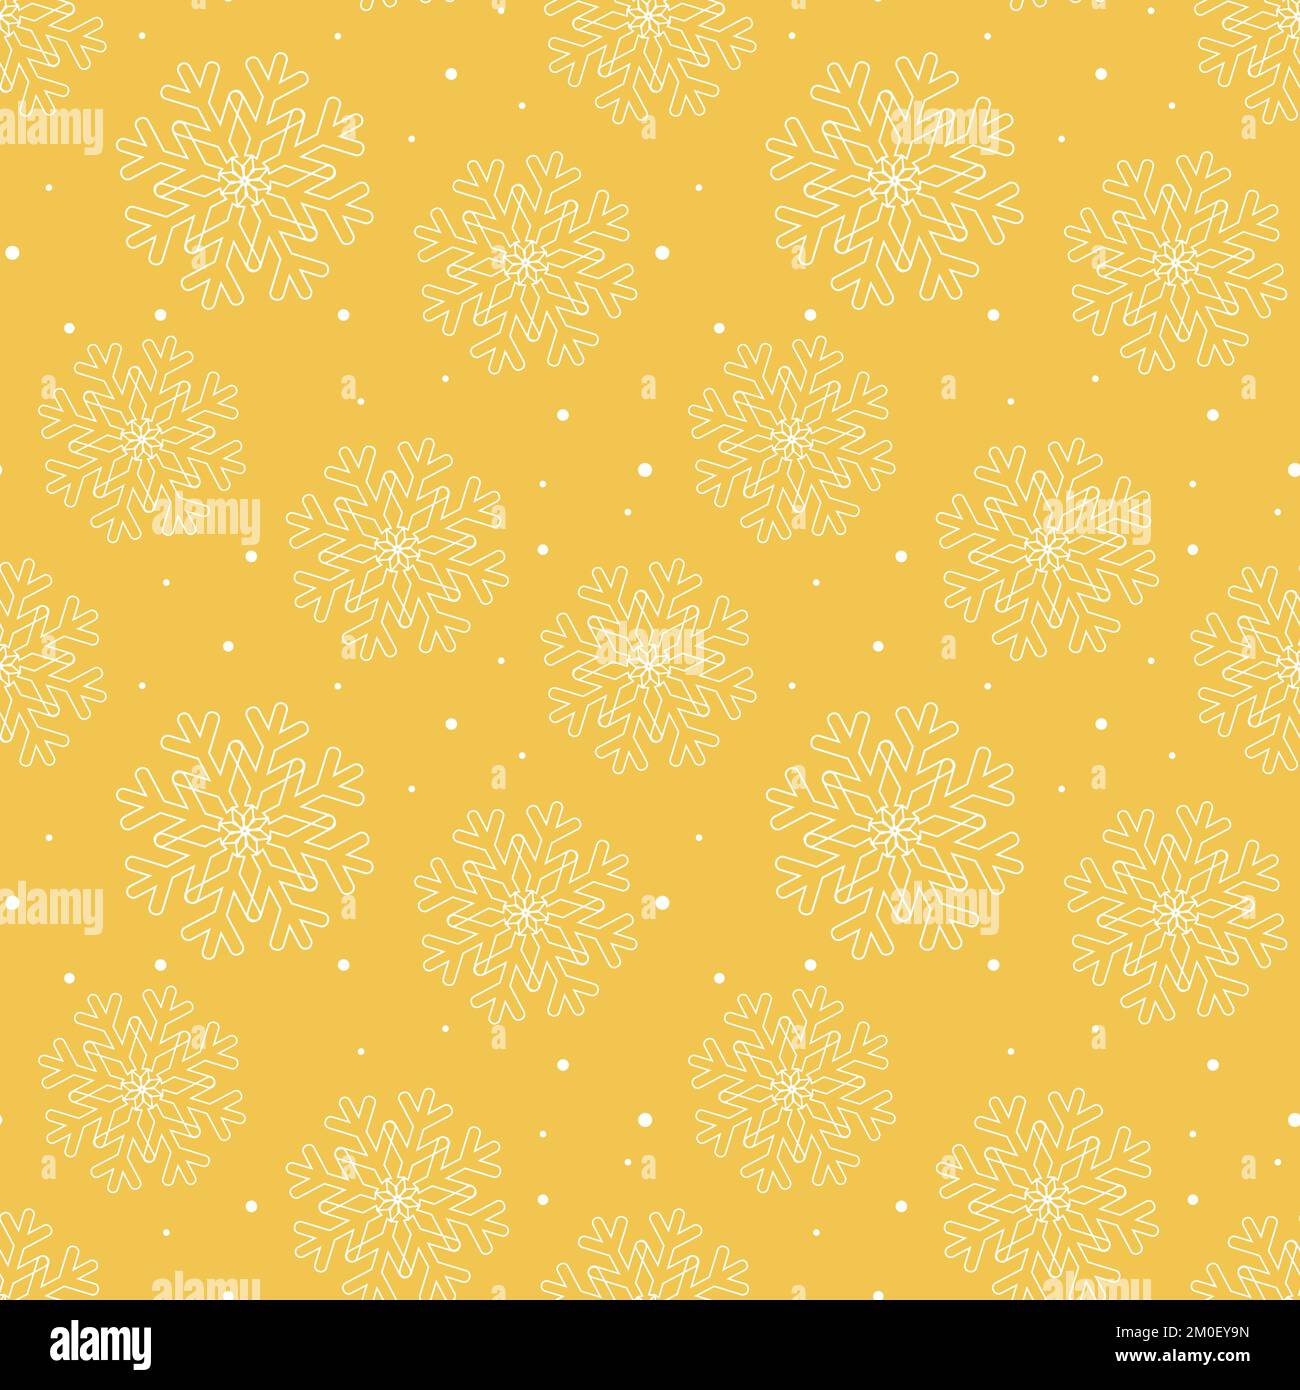 Nahtlose Schneeflocken mit Muster. Festlicher Winterhintergrund. Silhouette weiße Schneeflocken goldener Hintergrund. Druck für Textilien, Papier, Verpackungen, Tapeten Stock Vektor